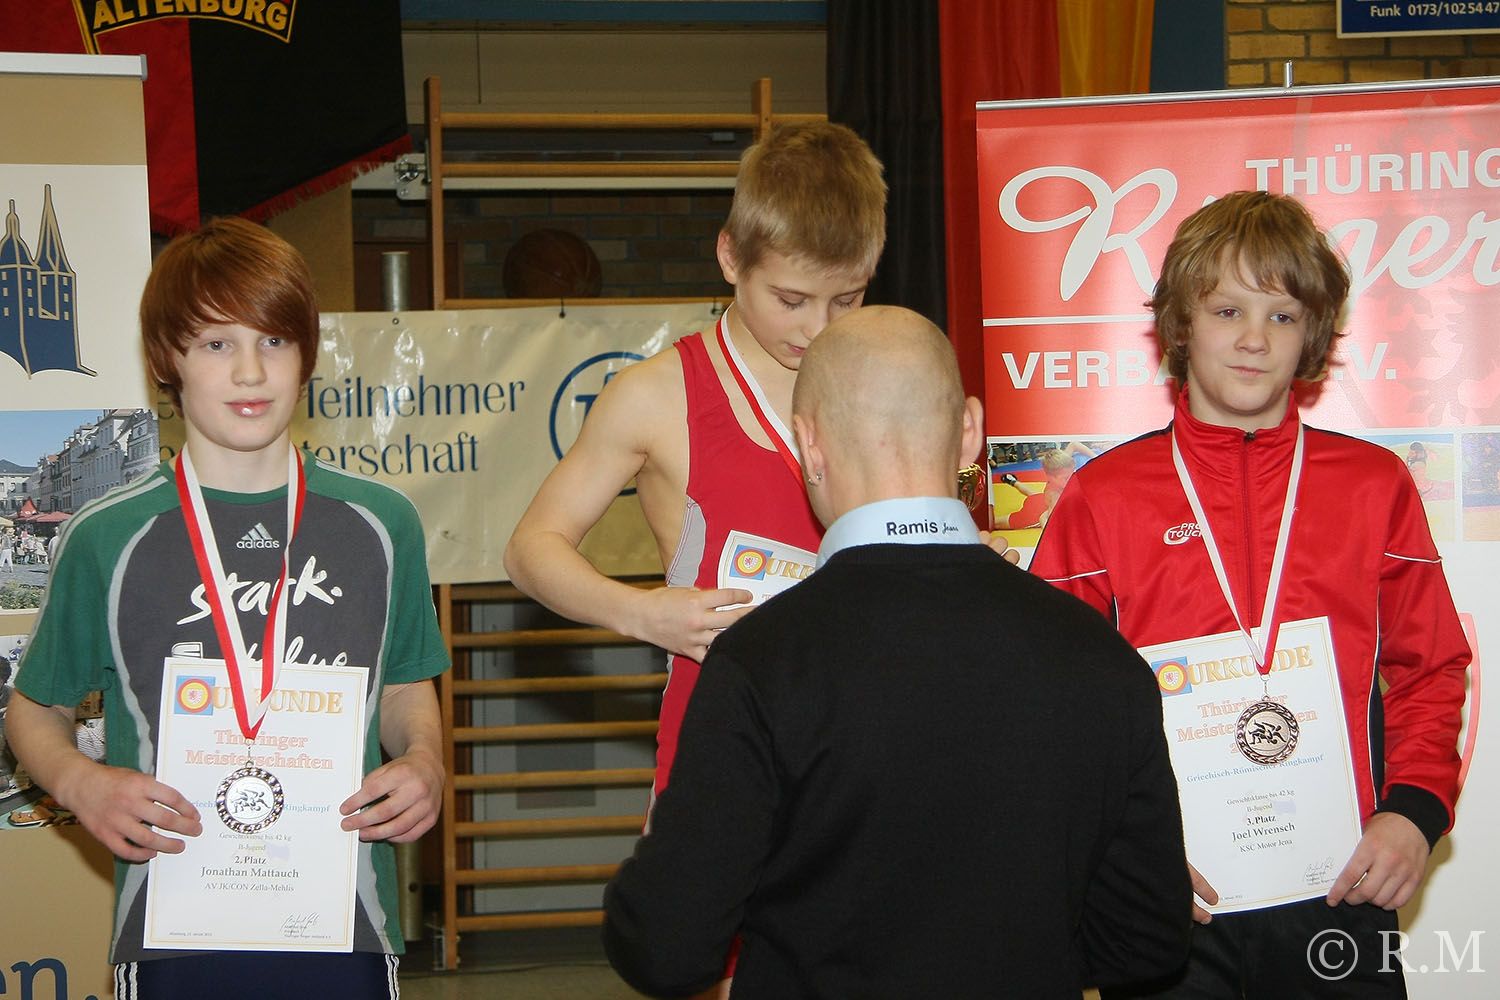 22 Medaillen für Greizer Ringer in Altenburg